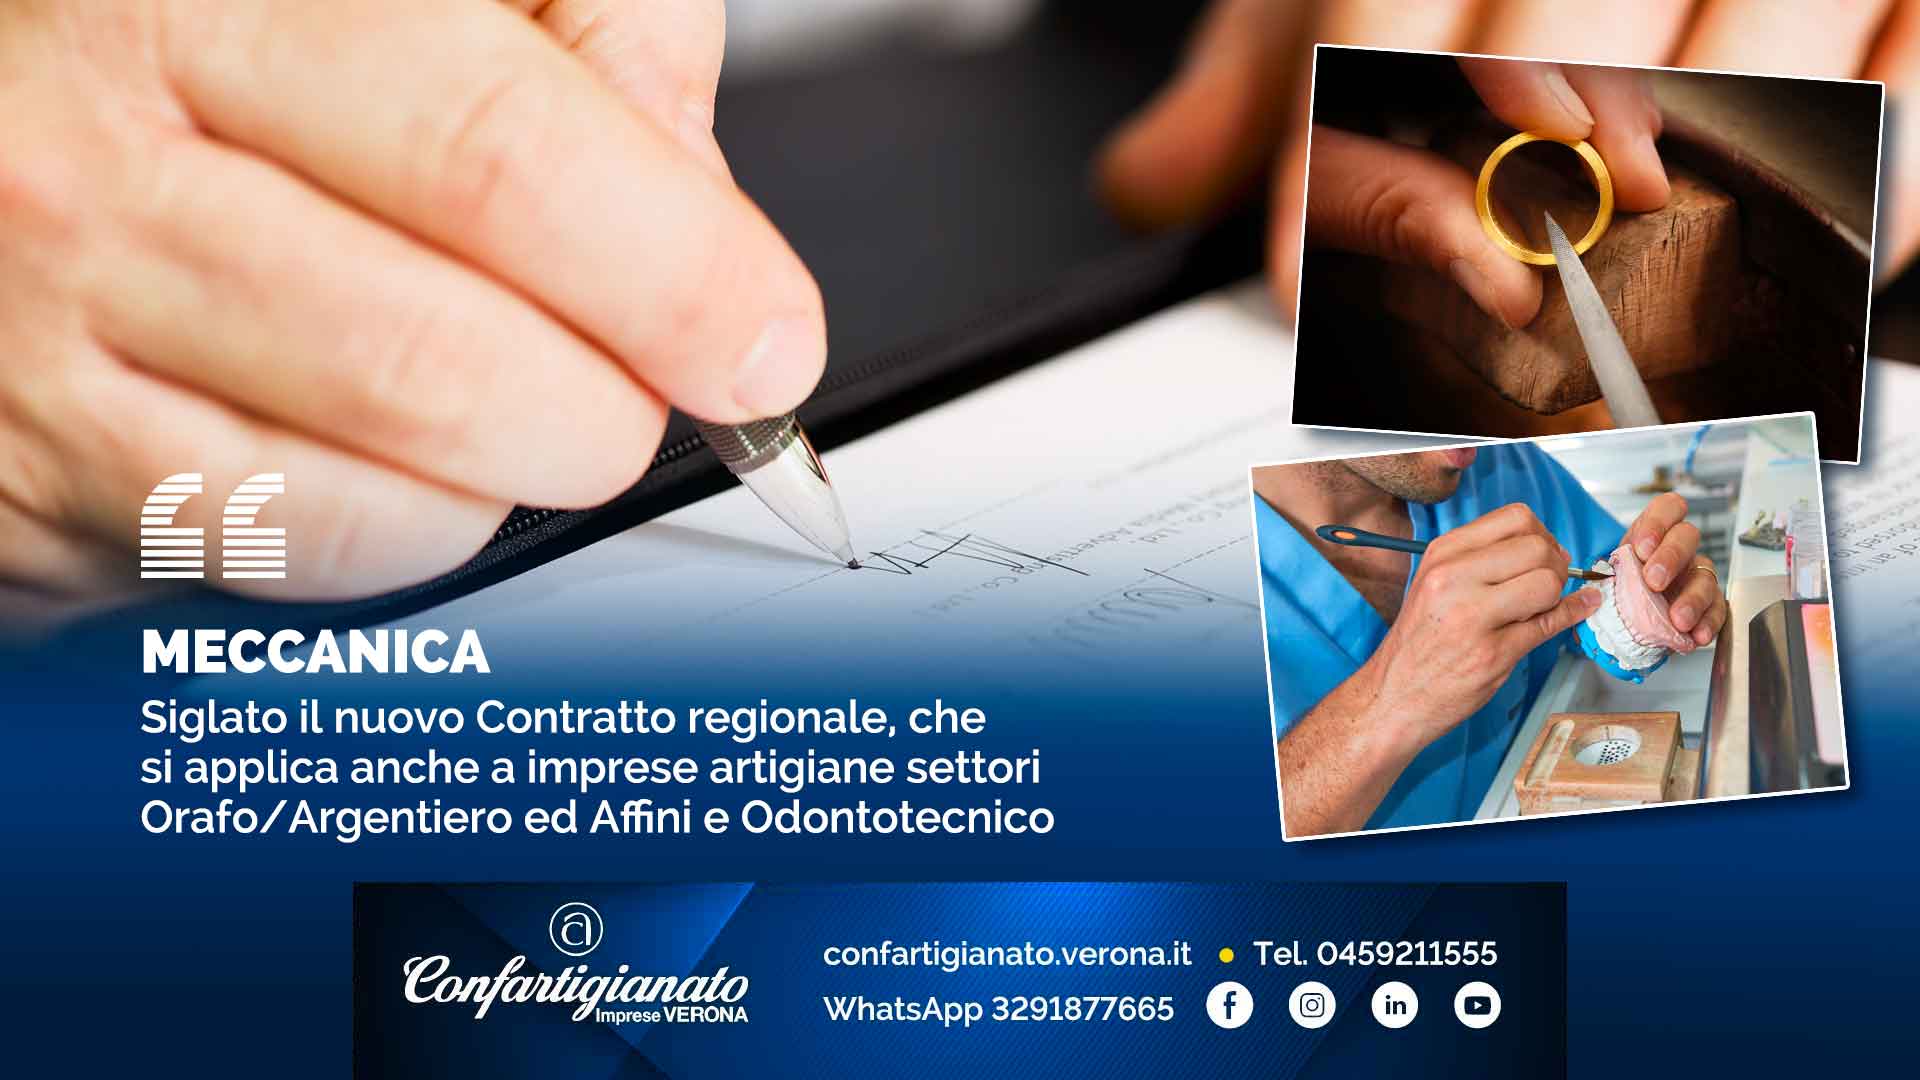 MECCANICA – Siglato il nuovo Contratto regionale, che si applica anche a imprese artigiane settori Orafo/Argentiero ed Affini e Odontotecnico